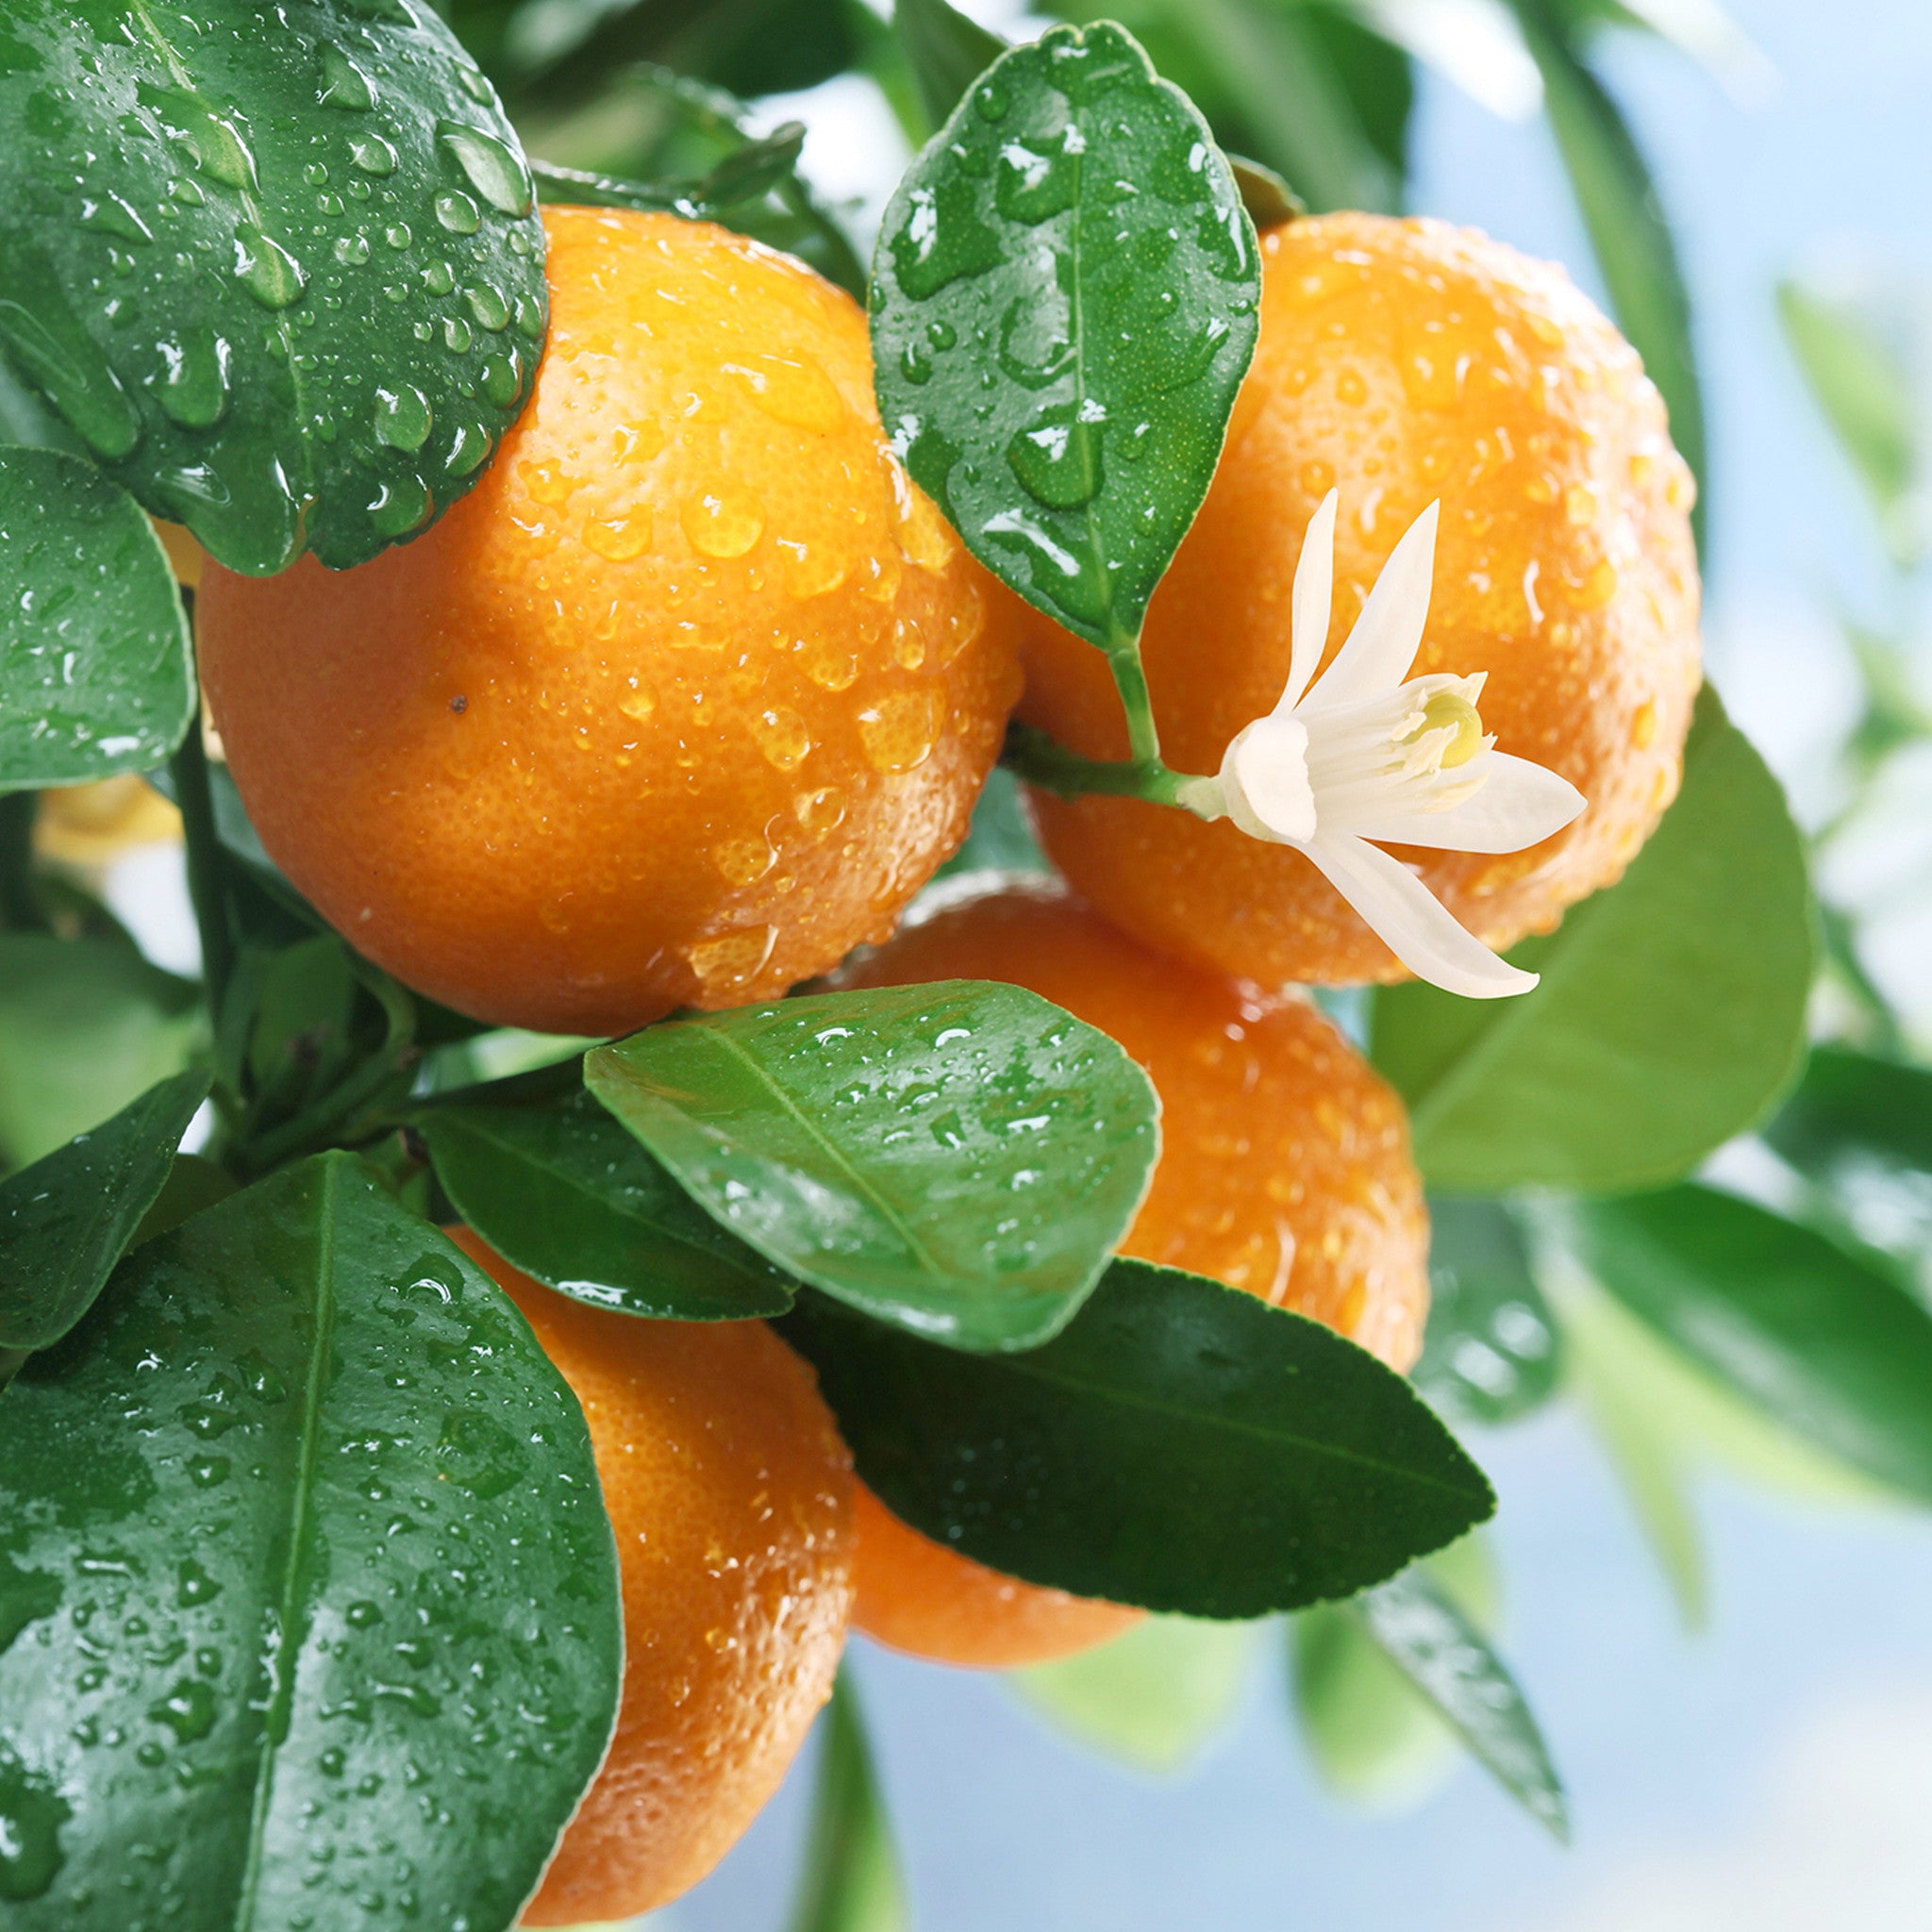 PURE ORANGE BLOSSOM ABSOLUTE Citrus aurantium var.amara NATURAL